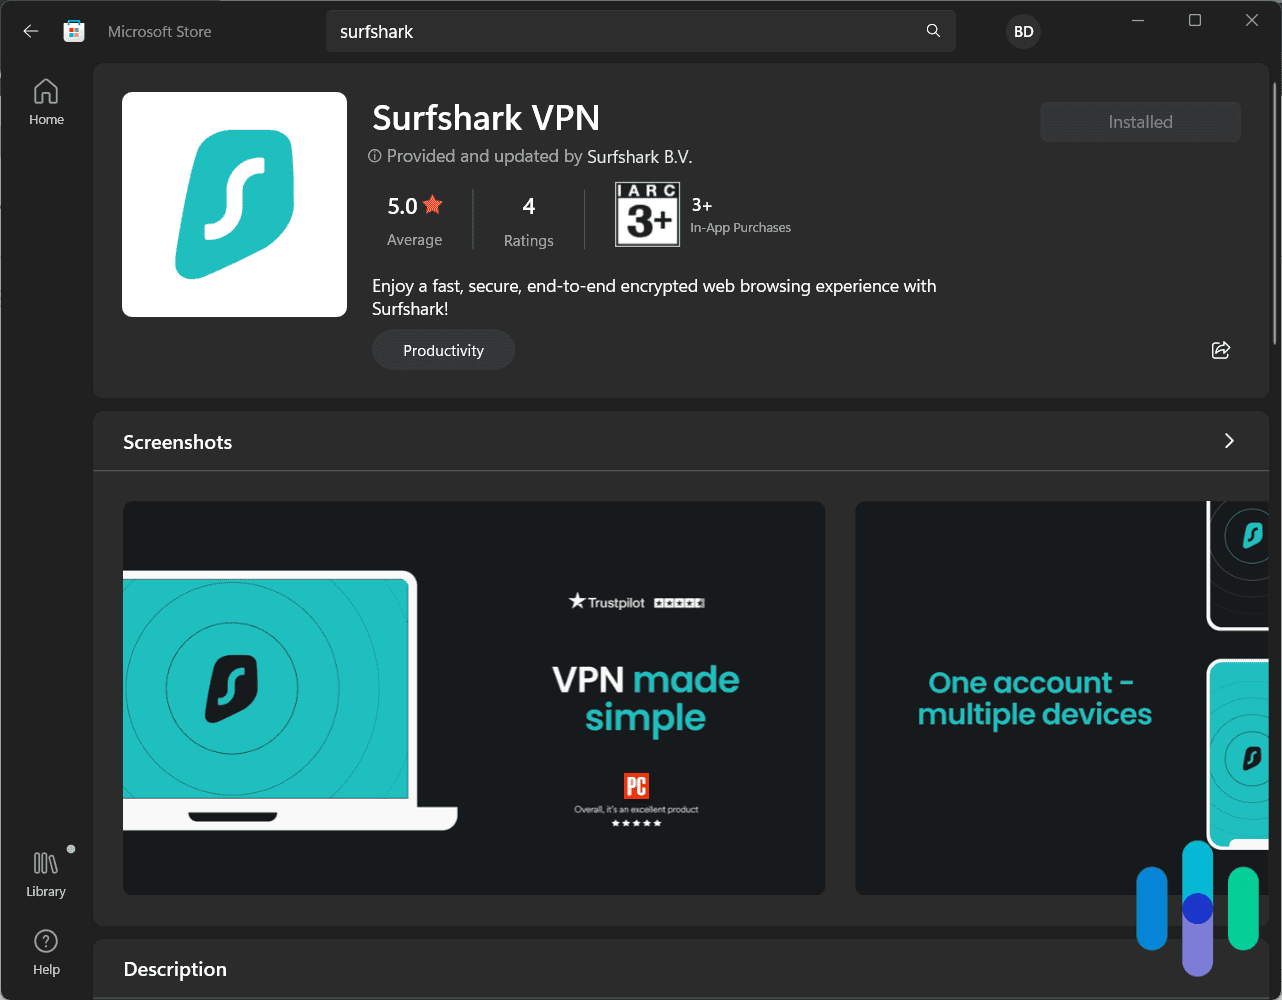 Surfshark VPN from the Microsoft Store